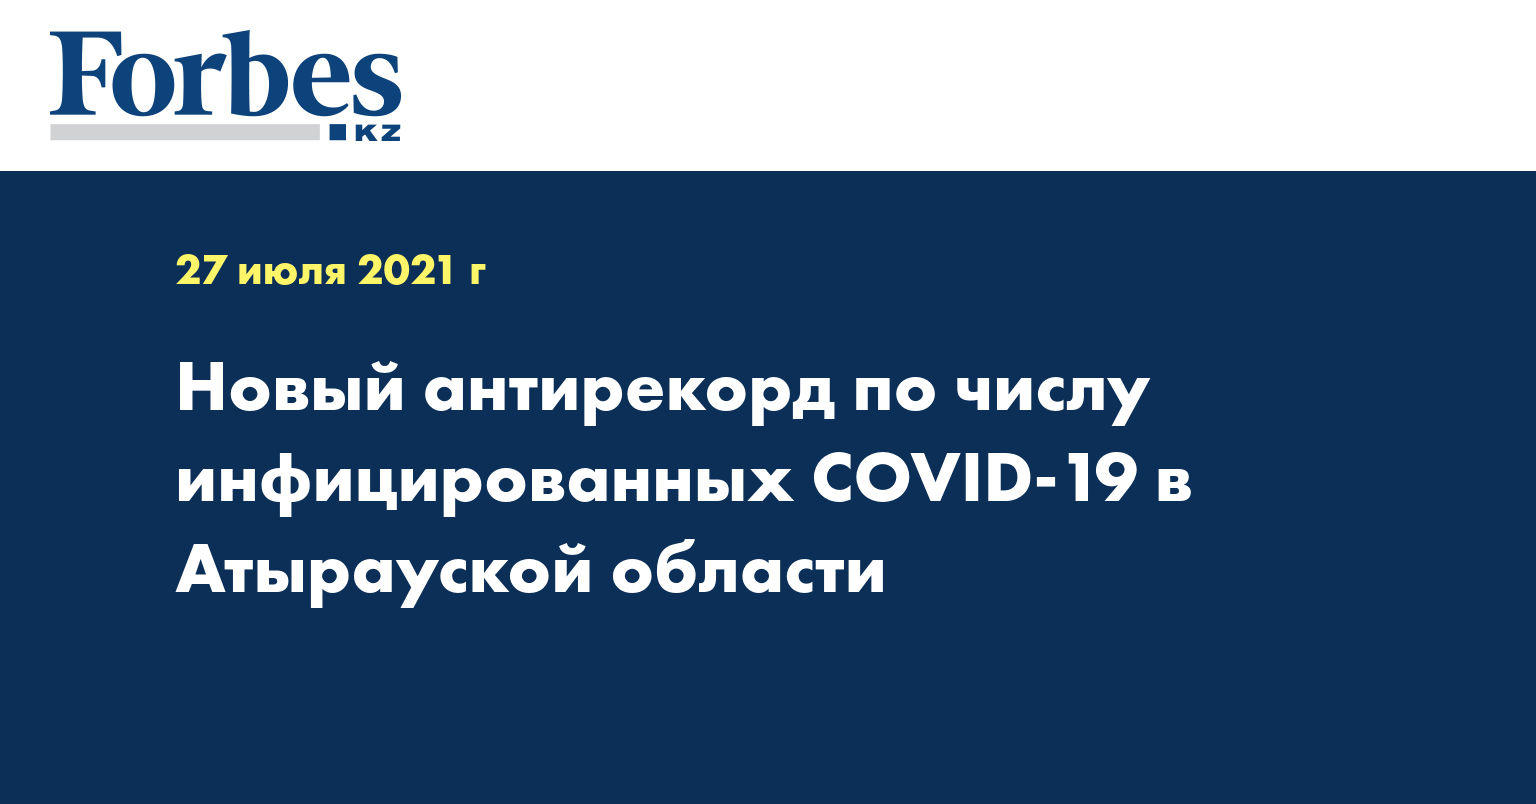  Новый антирекорд по числу инфицированных COVID-19 в Атырауской области